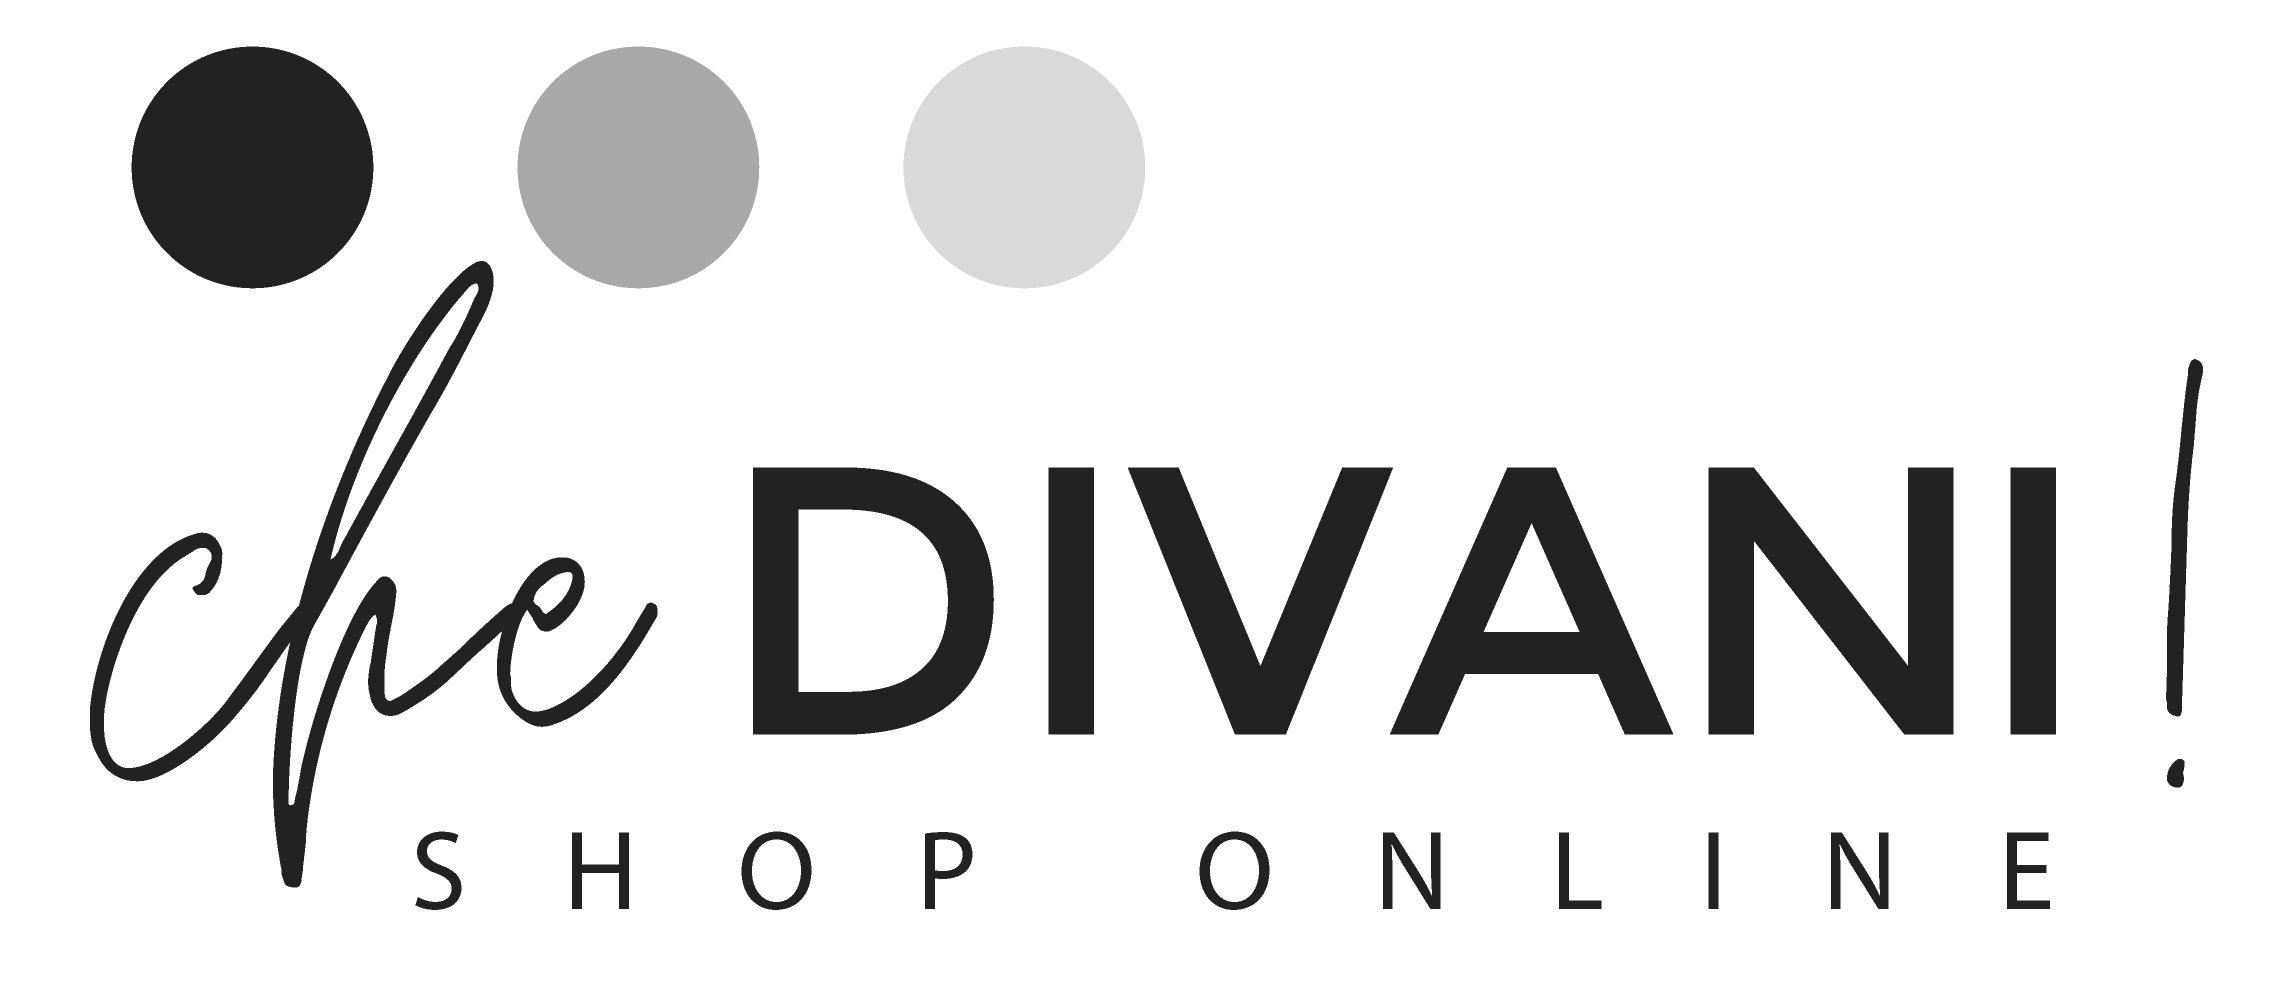 Che Divani Online Shop